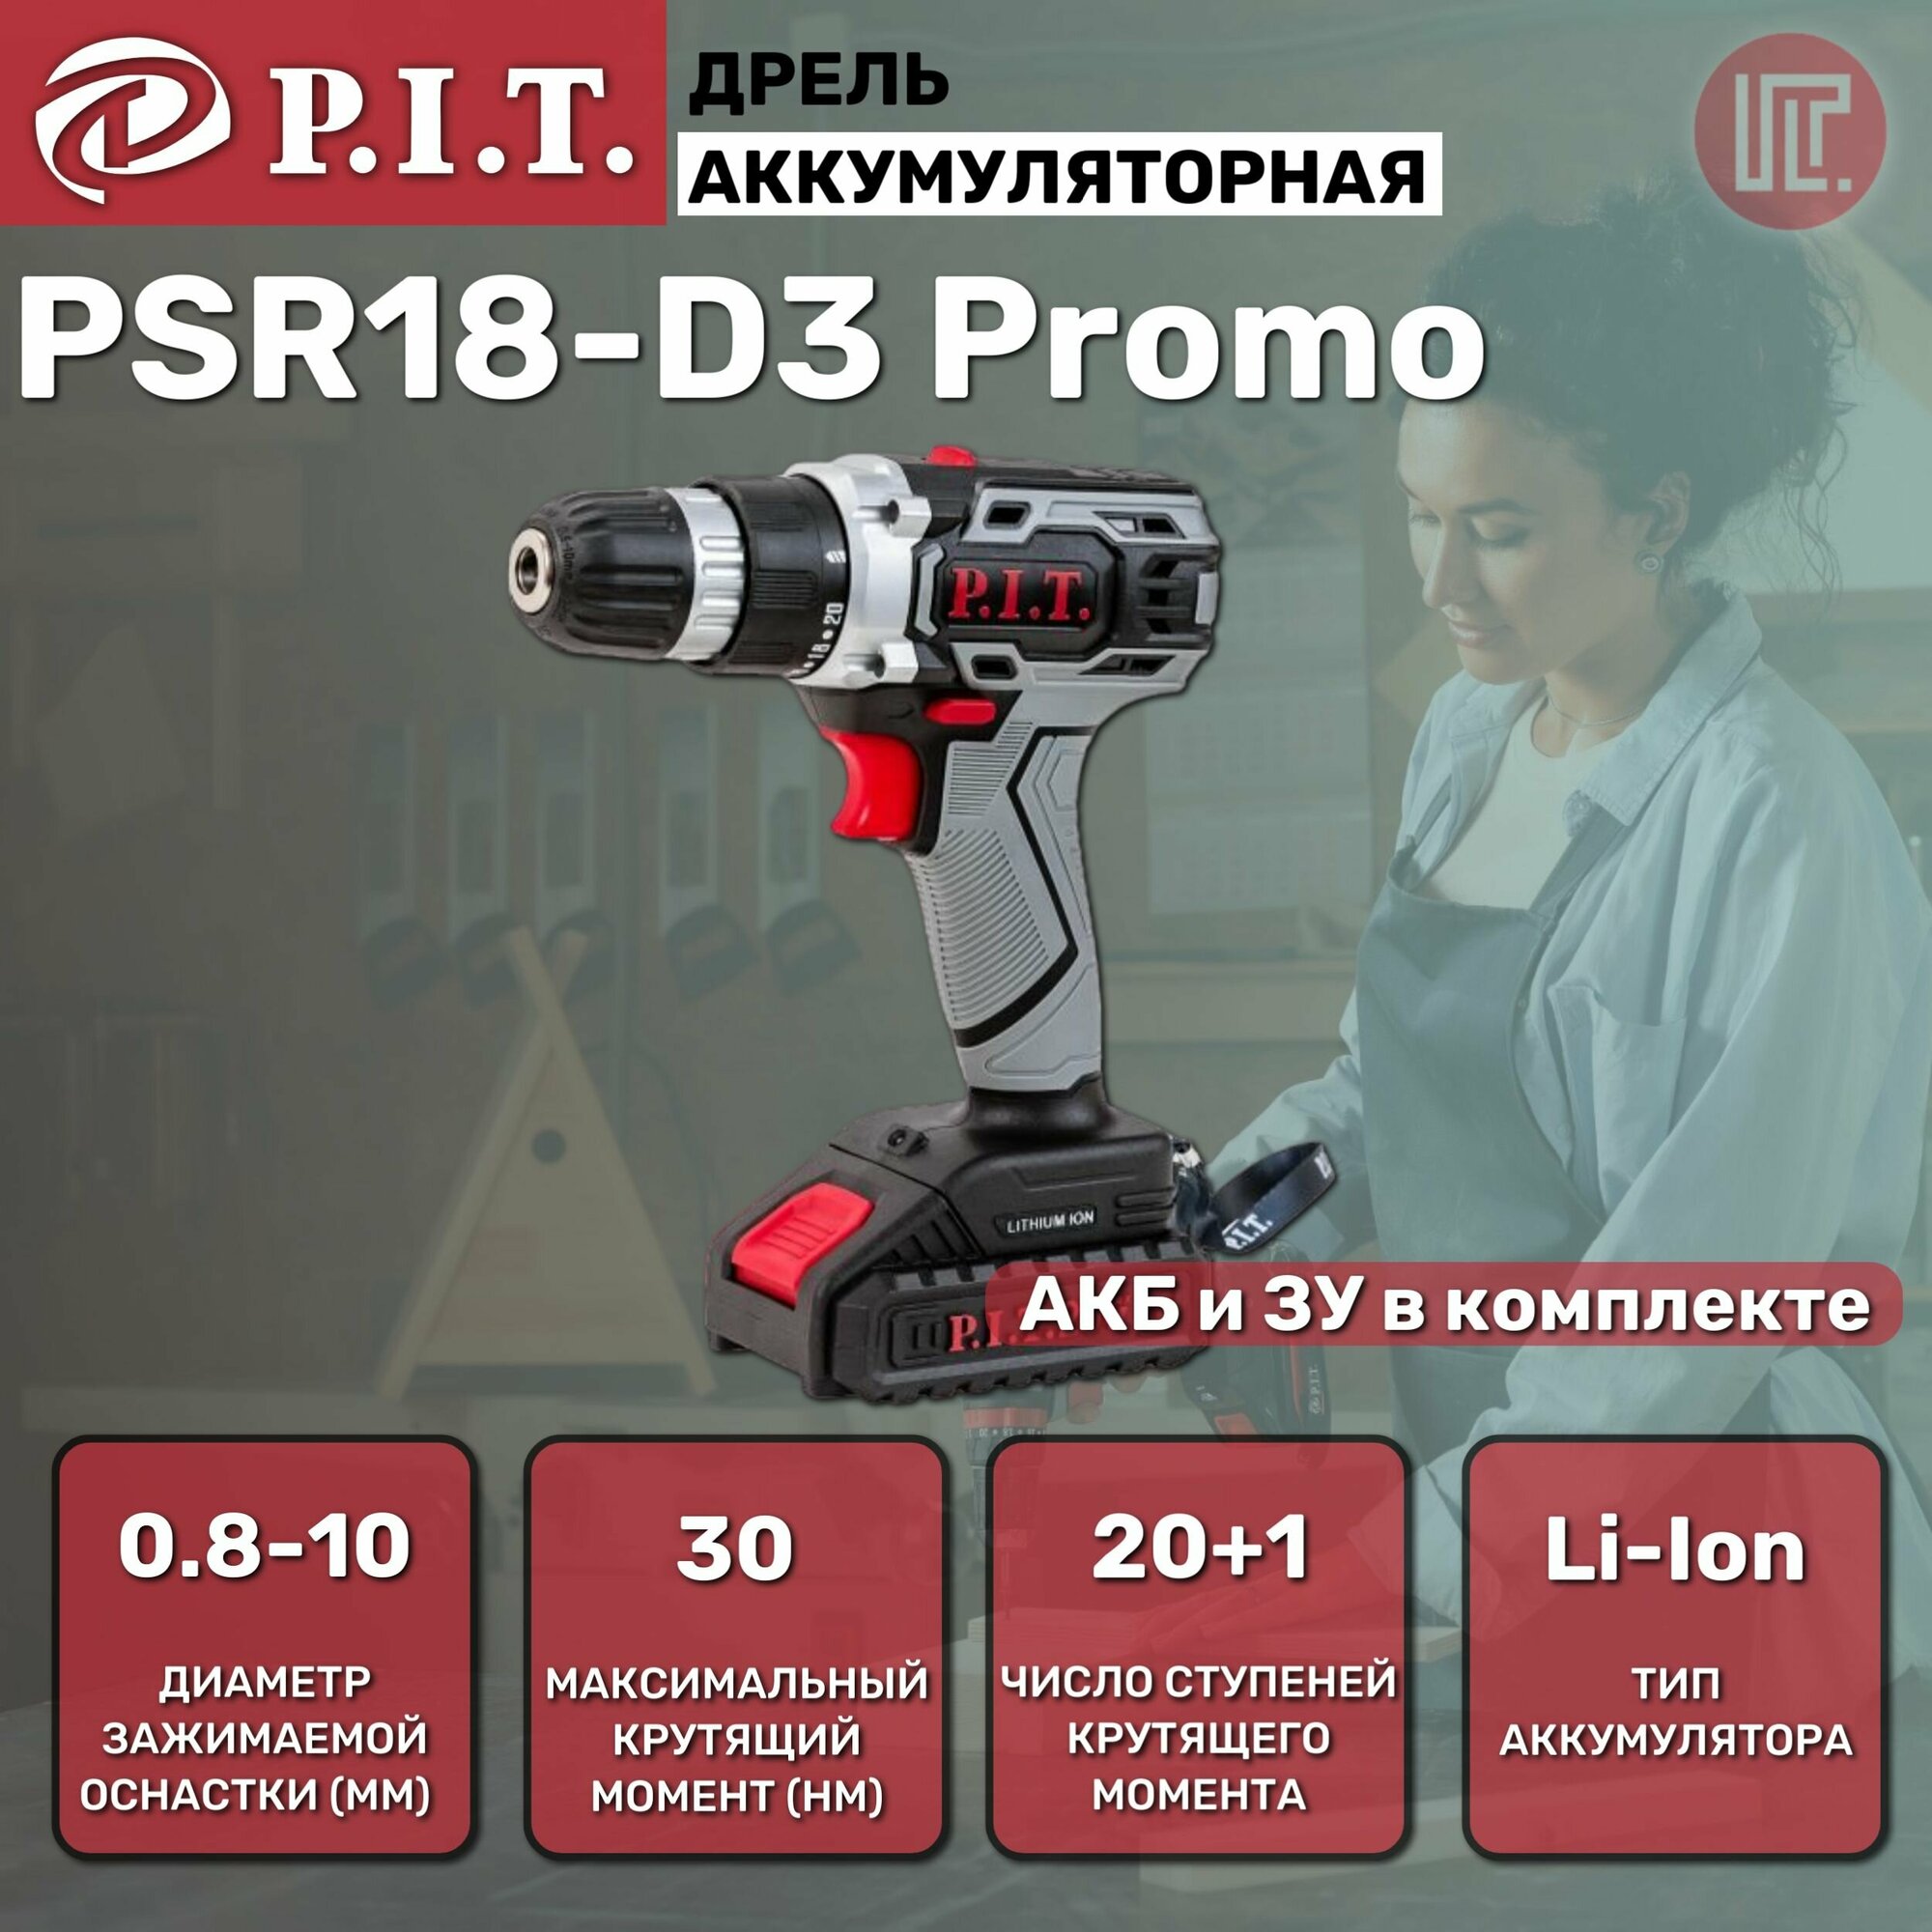 Дрель аккумуляторная P.I.T. PSR18-D3 Promo 20В, 1xLi 1,5 Ач, 2 ск, 30Нм, быстрая зарядка, коробка